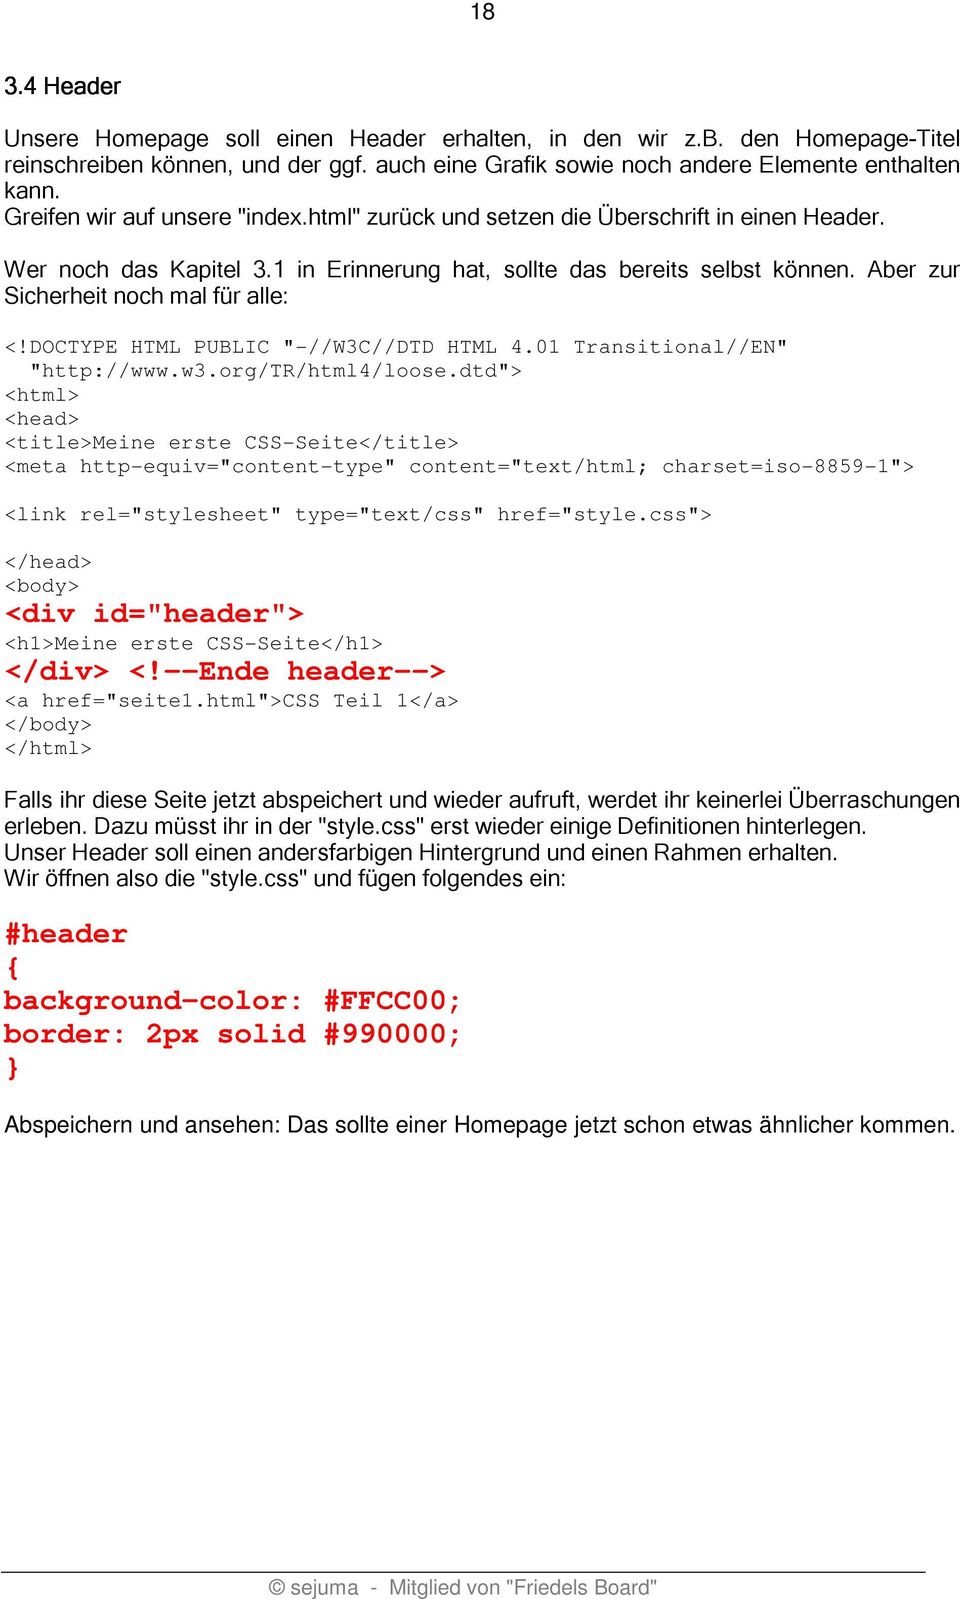 Aber zur Sicherheit noch mal für alle: <!DOCTYPE HTML PUBLIC "-//W3C//DTD HTML 4.01 Transitional//EN" "http://www.w3.org/tr/html4/loose.